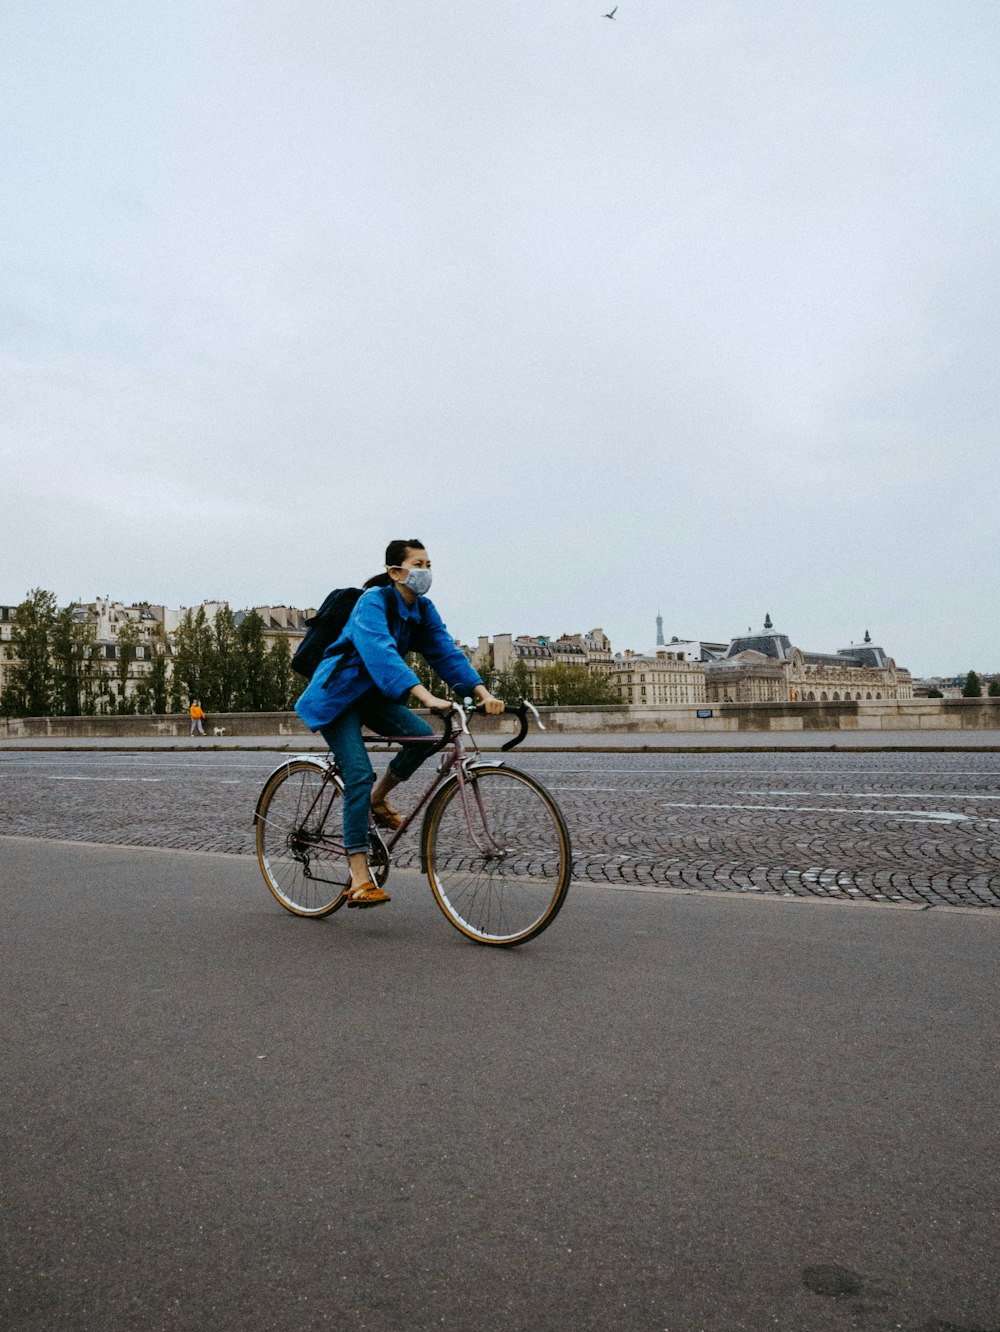 homme en veste bleue faisant du vélo sur la route pendant la journée